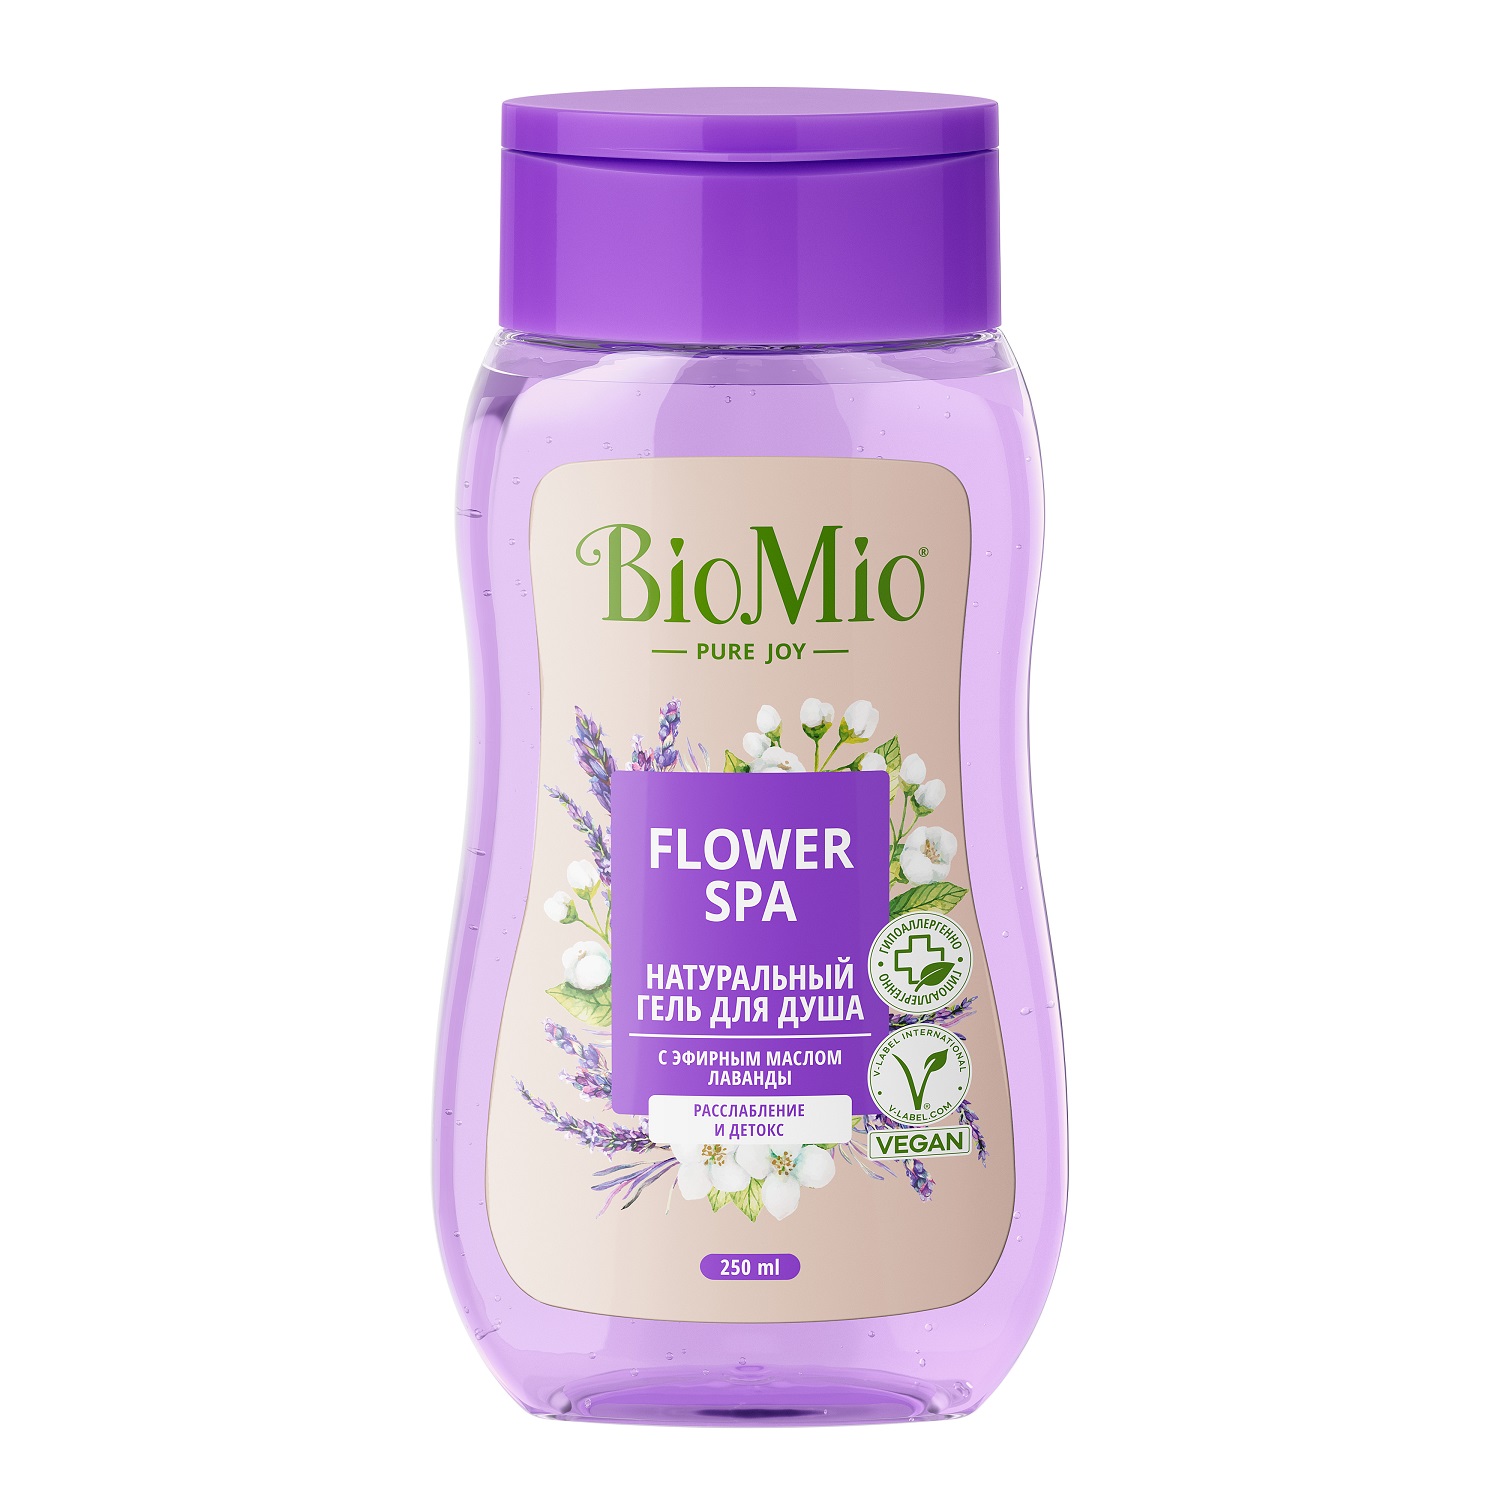 BioMio Гель для душа с эфирными маслами лаванды Flower Spa 3+, 250 мл (BioMio, Для ванны и душа) натуральный гель для душа biomio flower spa с эфирным маслом лавандылаванда 650 мл 735 г